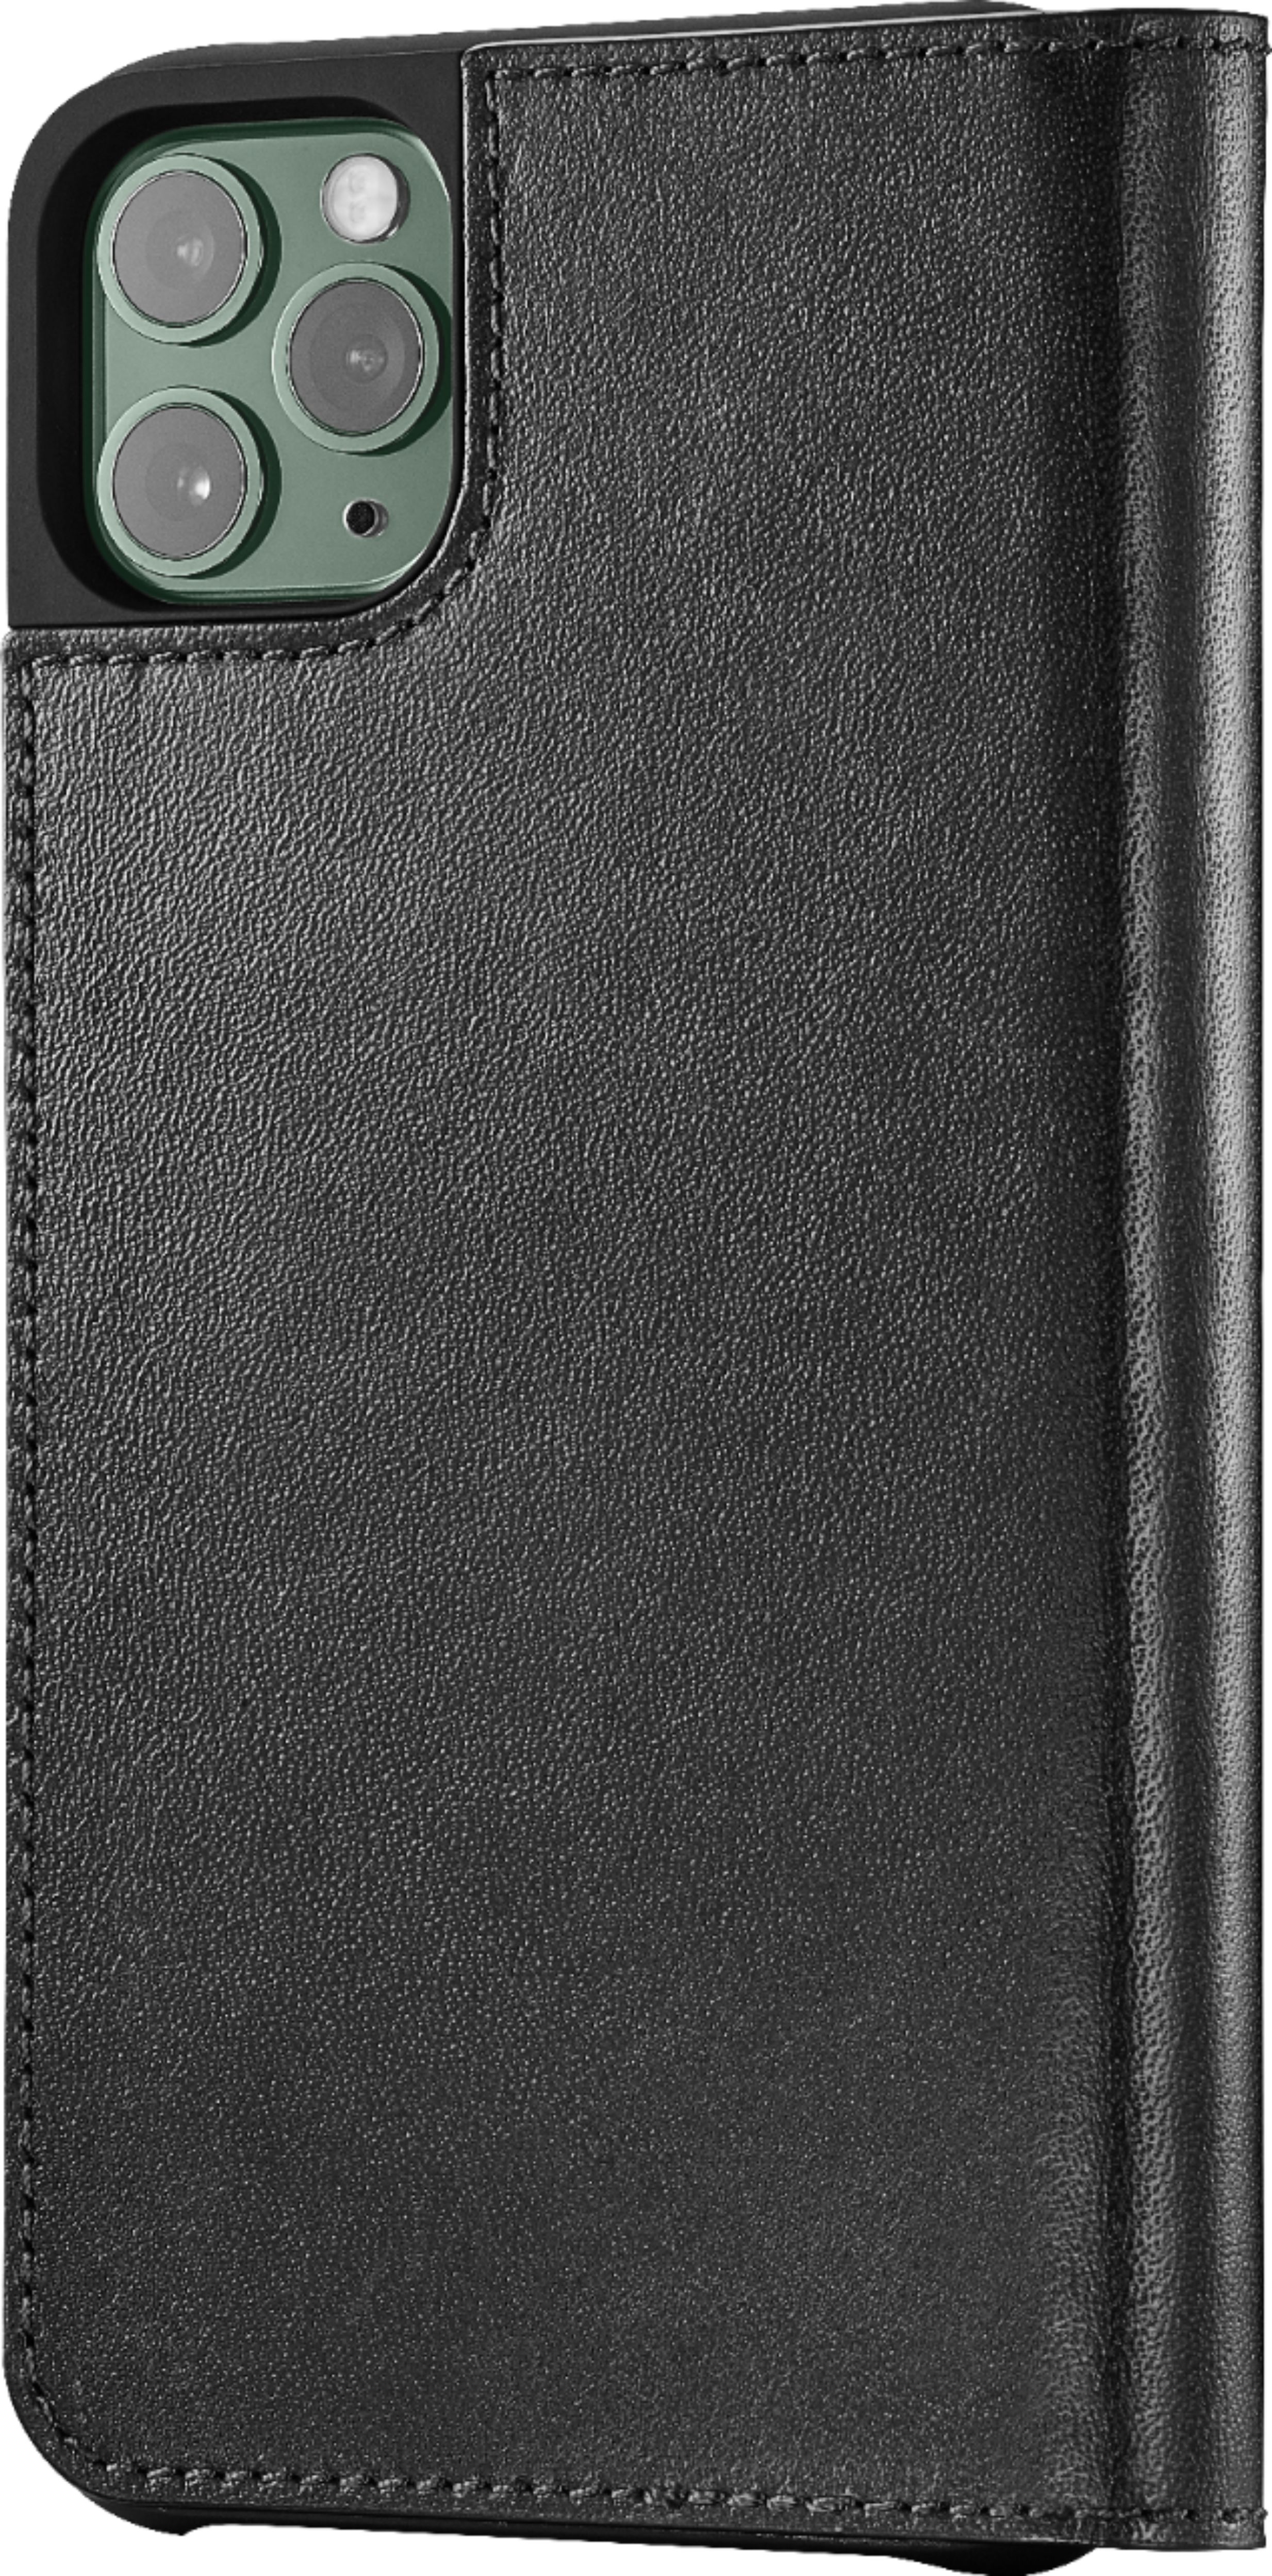 Lv Iphone 11 Folio  Natural Resource Department